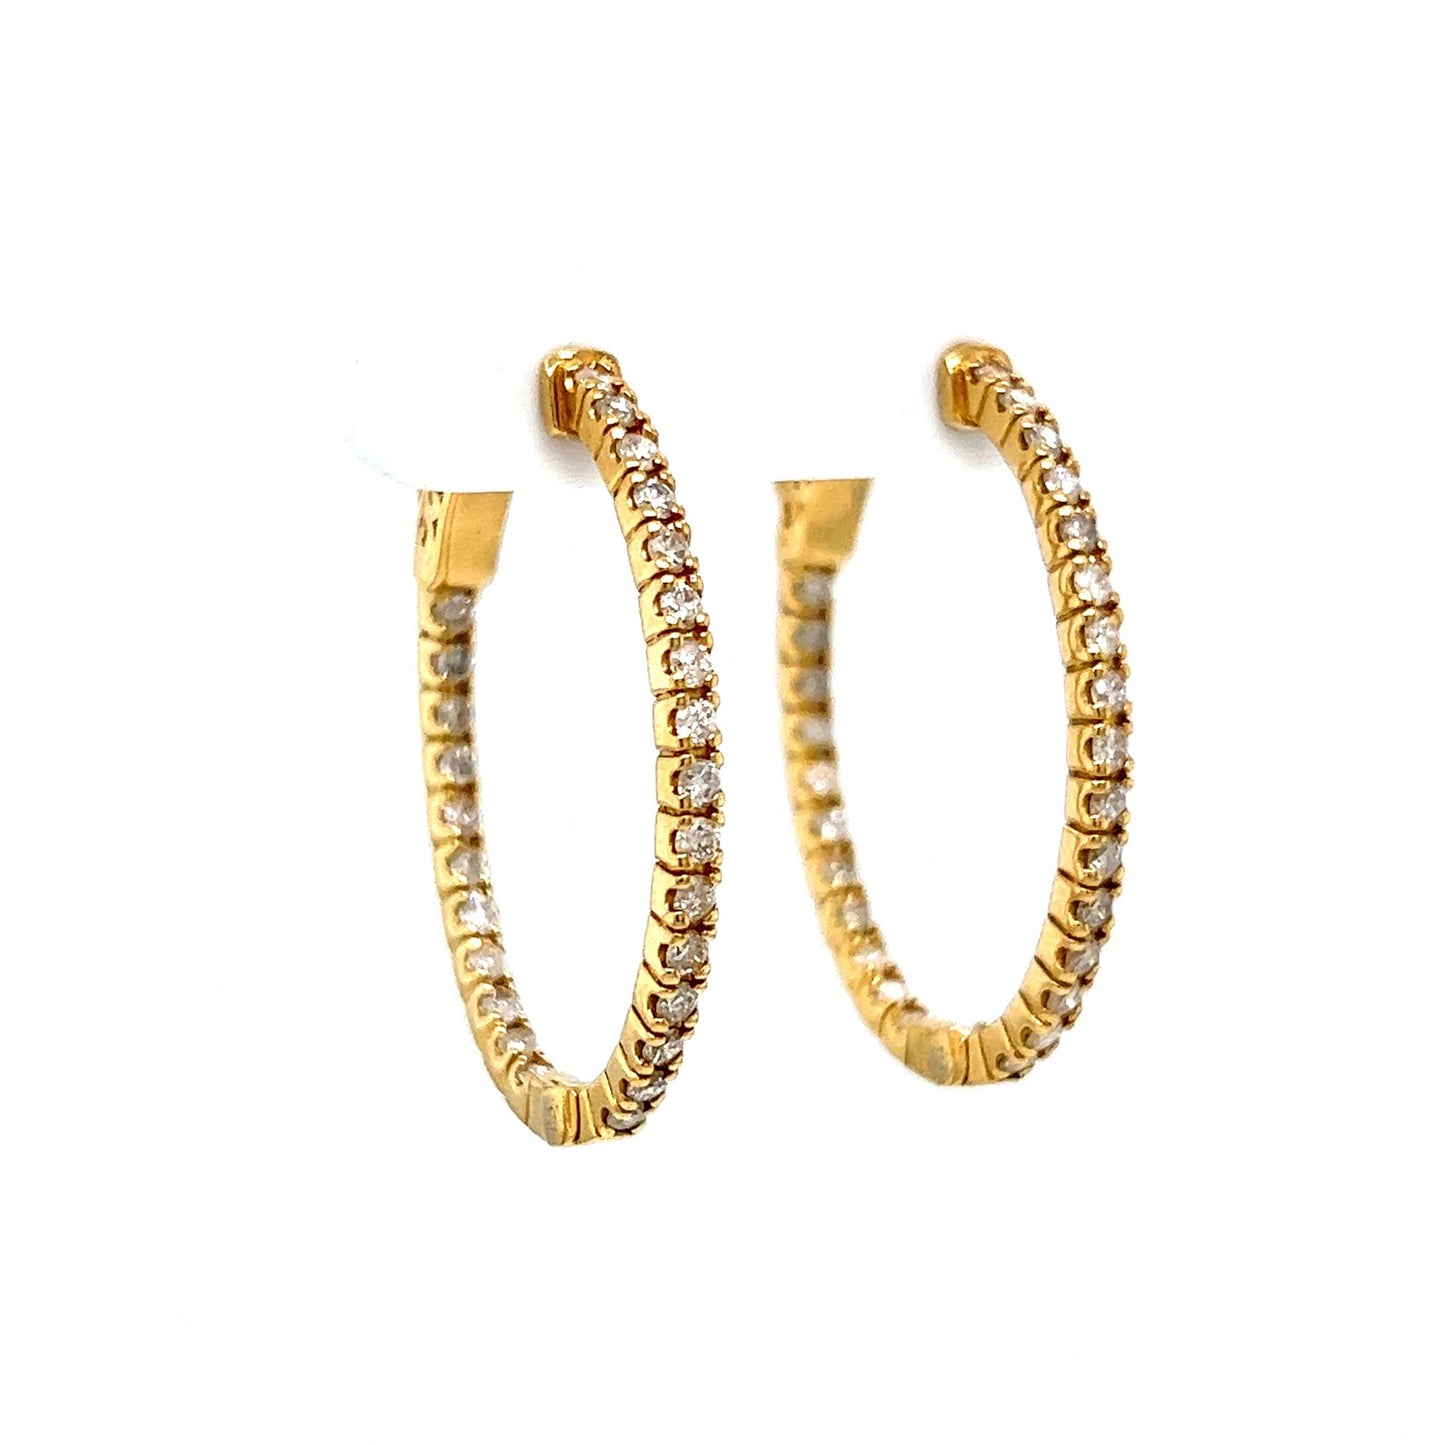 1.20 Diamond Oval Hoop Earrings in 14k Yellow Gold